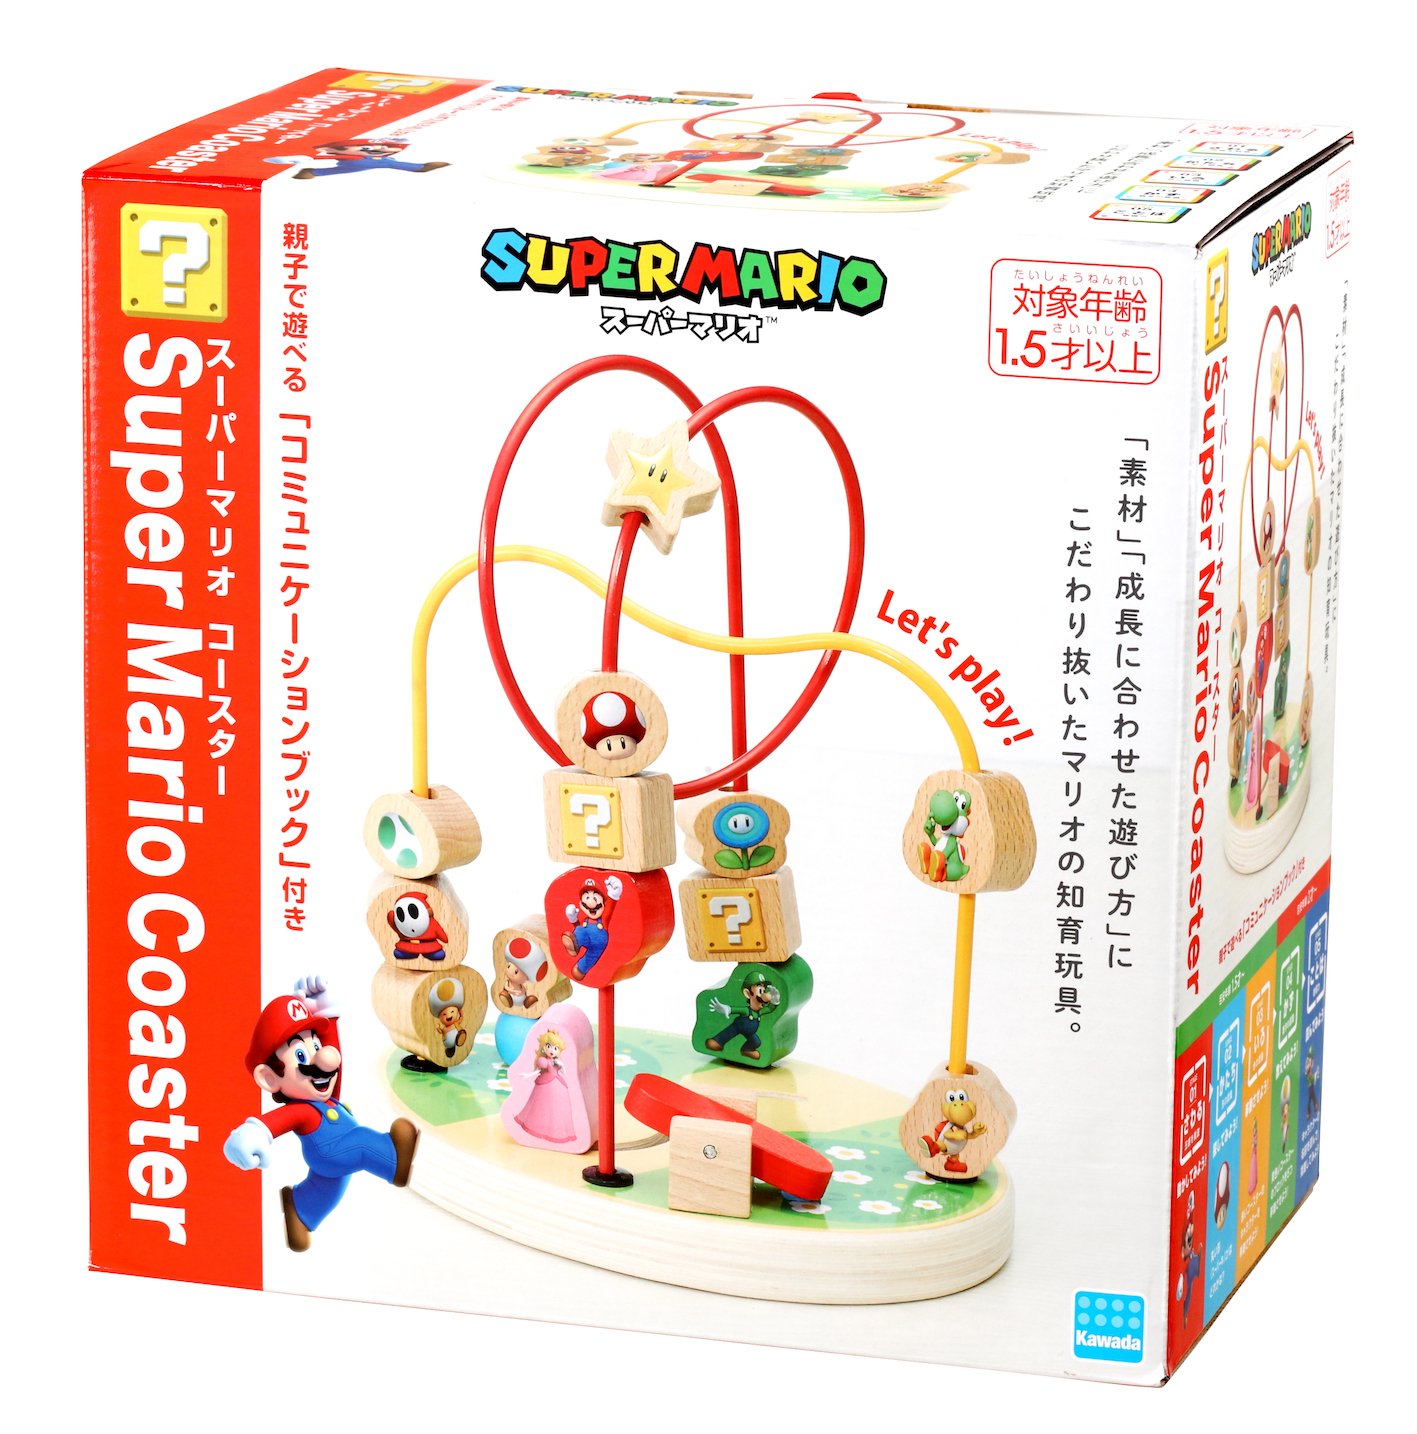 スーパーマリオの木製知育玩具登場 株式会社カワダのプレスリリース